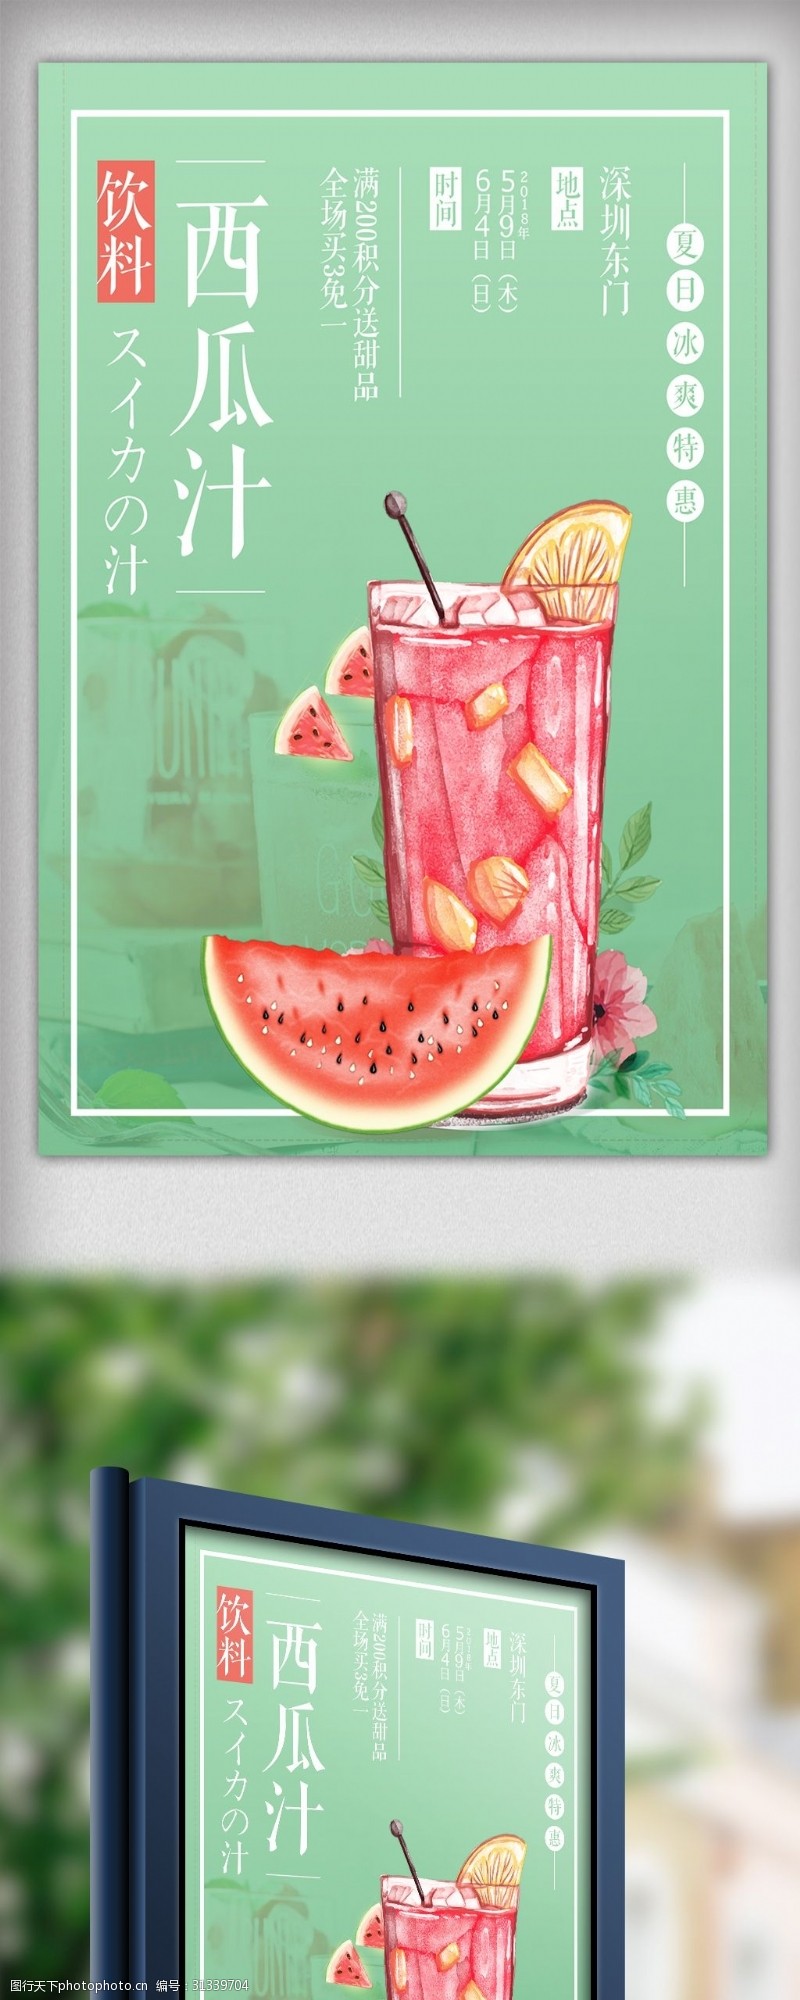 鲜榨果汁免费下载2018年小清新西瓜海报设计